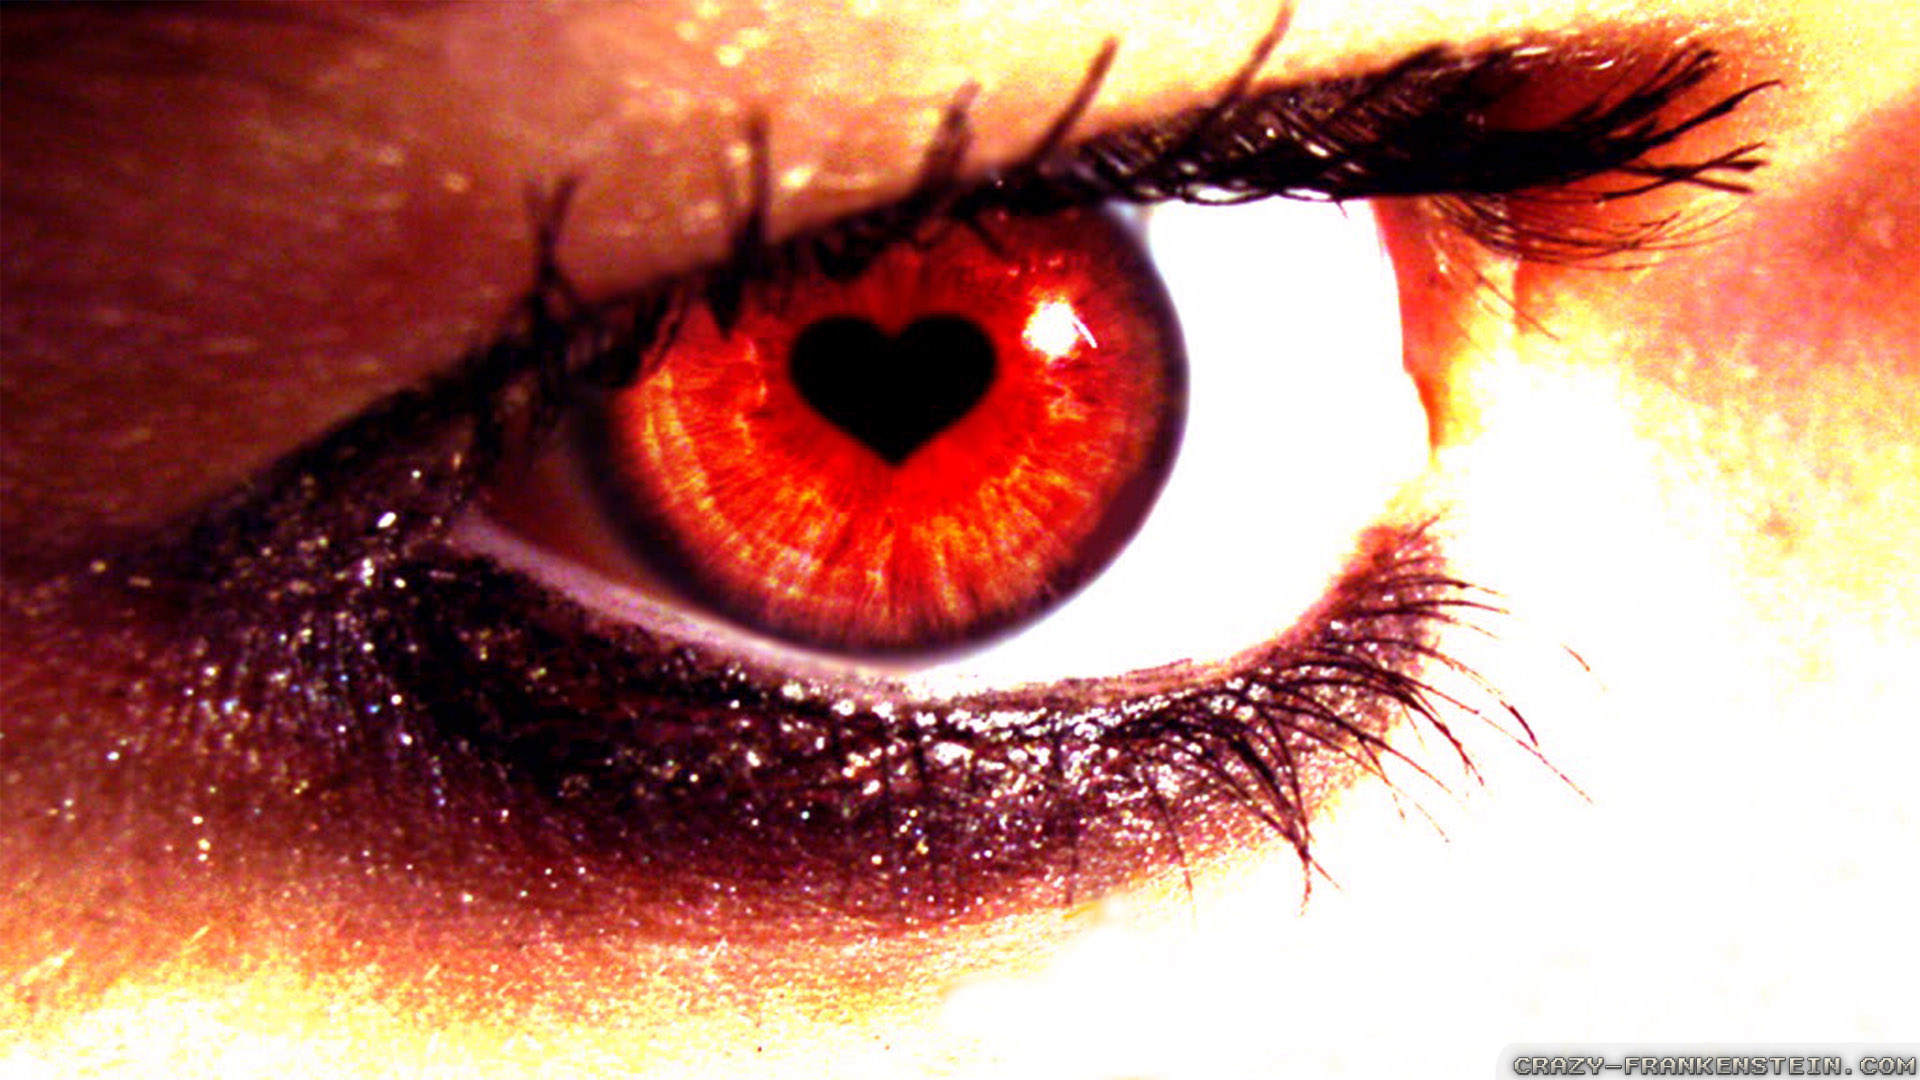 love eyes wallpaper,eye,iris,close up,eyelash,red